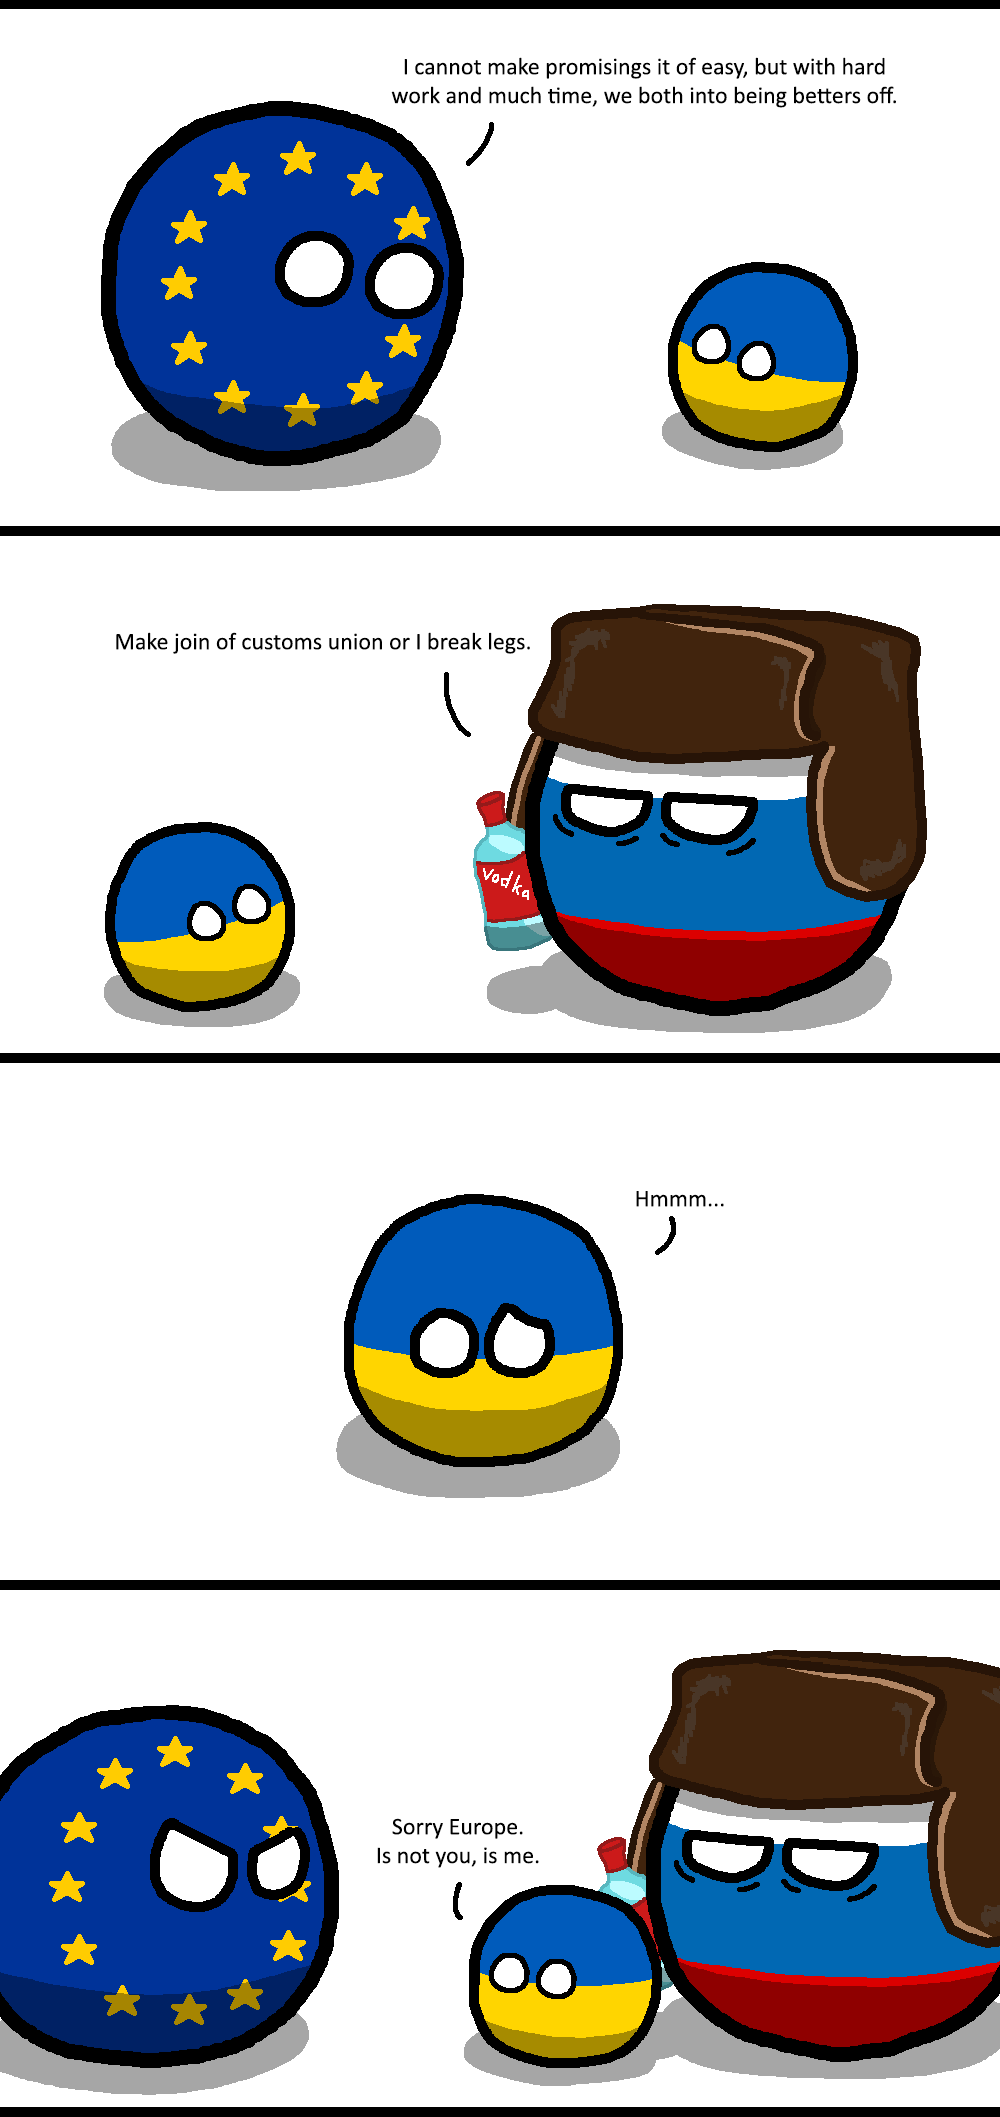 Russian diplomatic skill